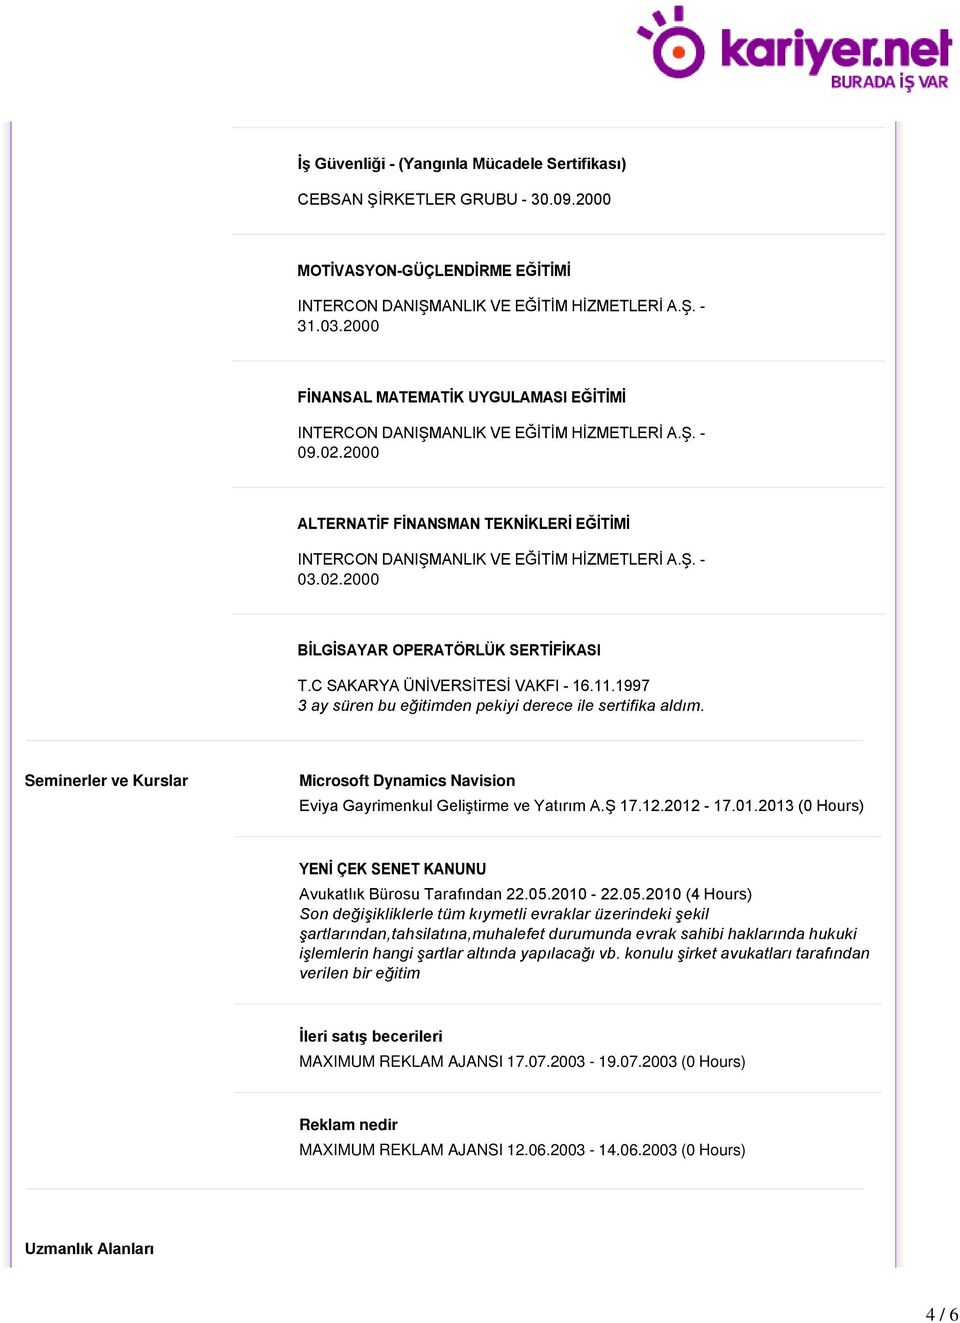 Seminerler ve Kurslar Microsoft Dynamics Navision Eviya Gayrimenkul Geliştirme ve Yatırım A.Ş 17.12.2012-17.01.2013 (0 Hours) YENİ ÇEK SENET KANUNU Avukatlık Bürosu Tarafından 22.05.